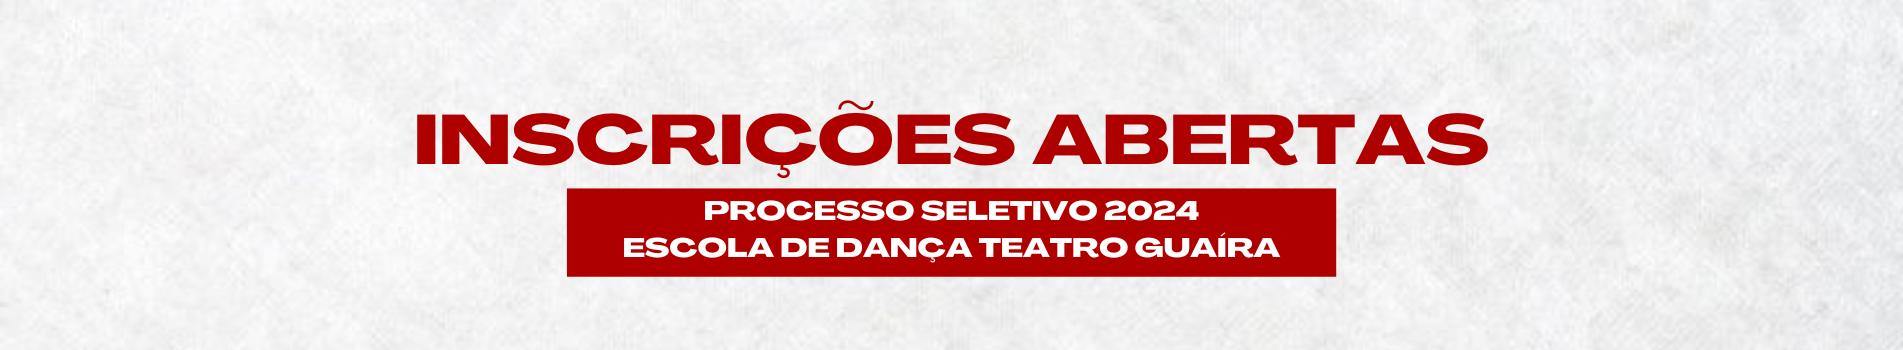 Inscrições abertas para o processo seletivo 2024 da Escola de Dança Teatro Guaíra